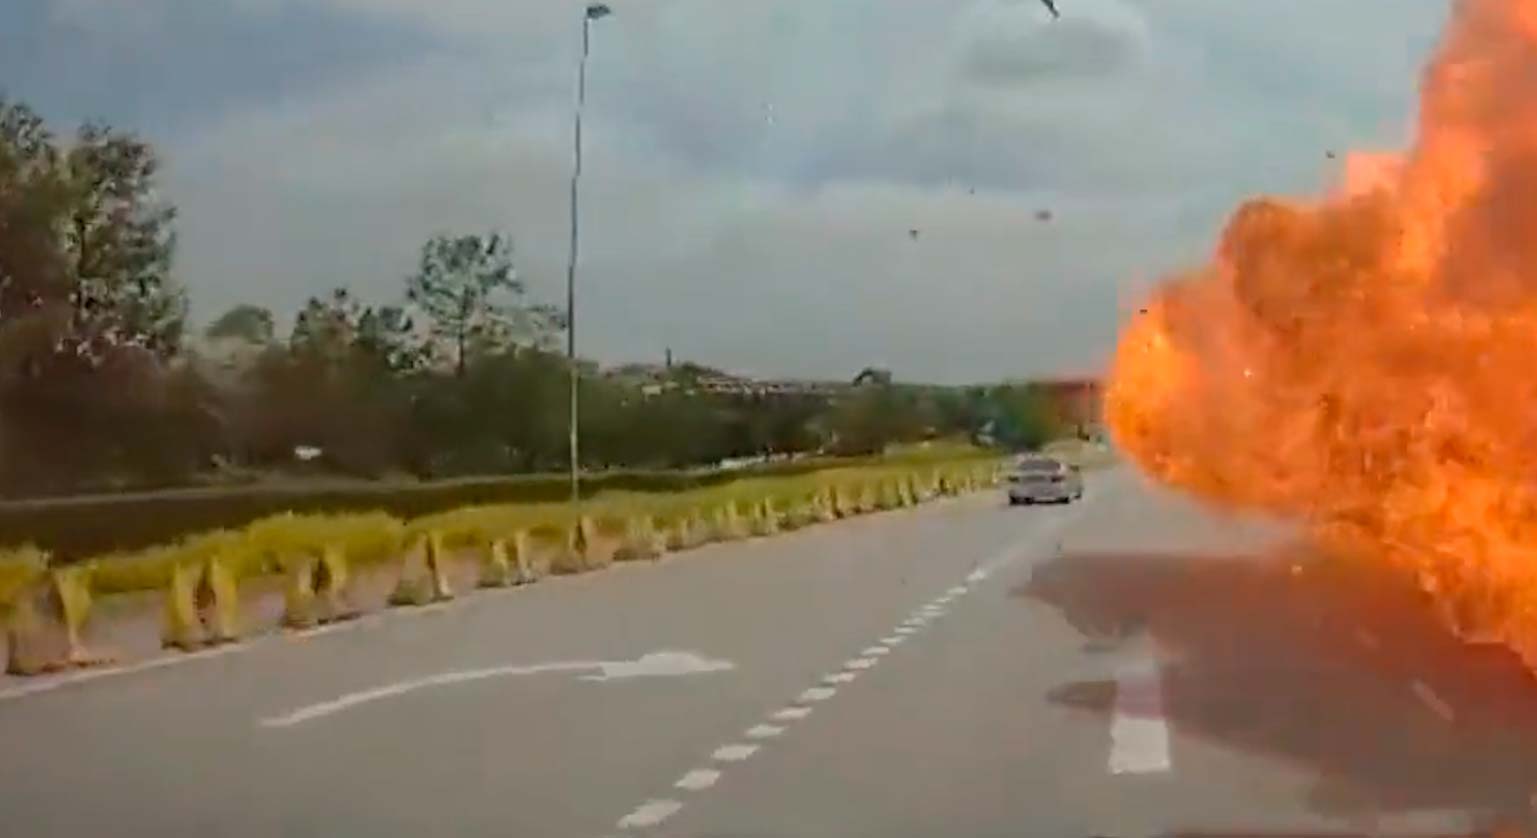 Βίντεο: Αεροπλάνο συντρίβεται πάνω σε αυτοκίνητο και μηχανή σε αυτοκινητόδρομο, εκρήγνυται, σκοτώνοντας 10 άτομα. Φωτογραφία: Twitter @SoyaCincauBM και @hoje_no